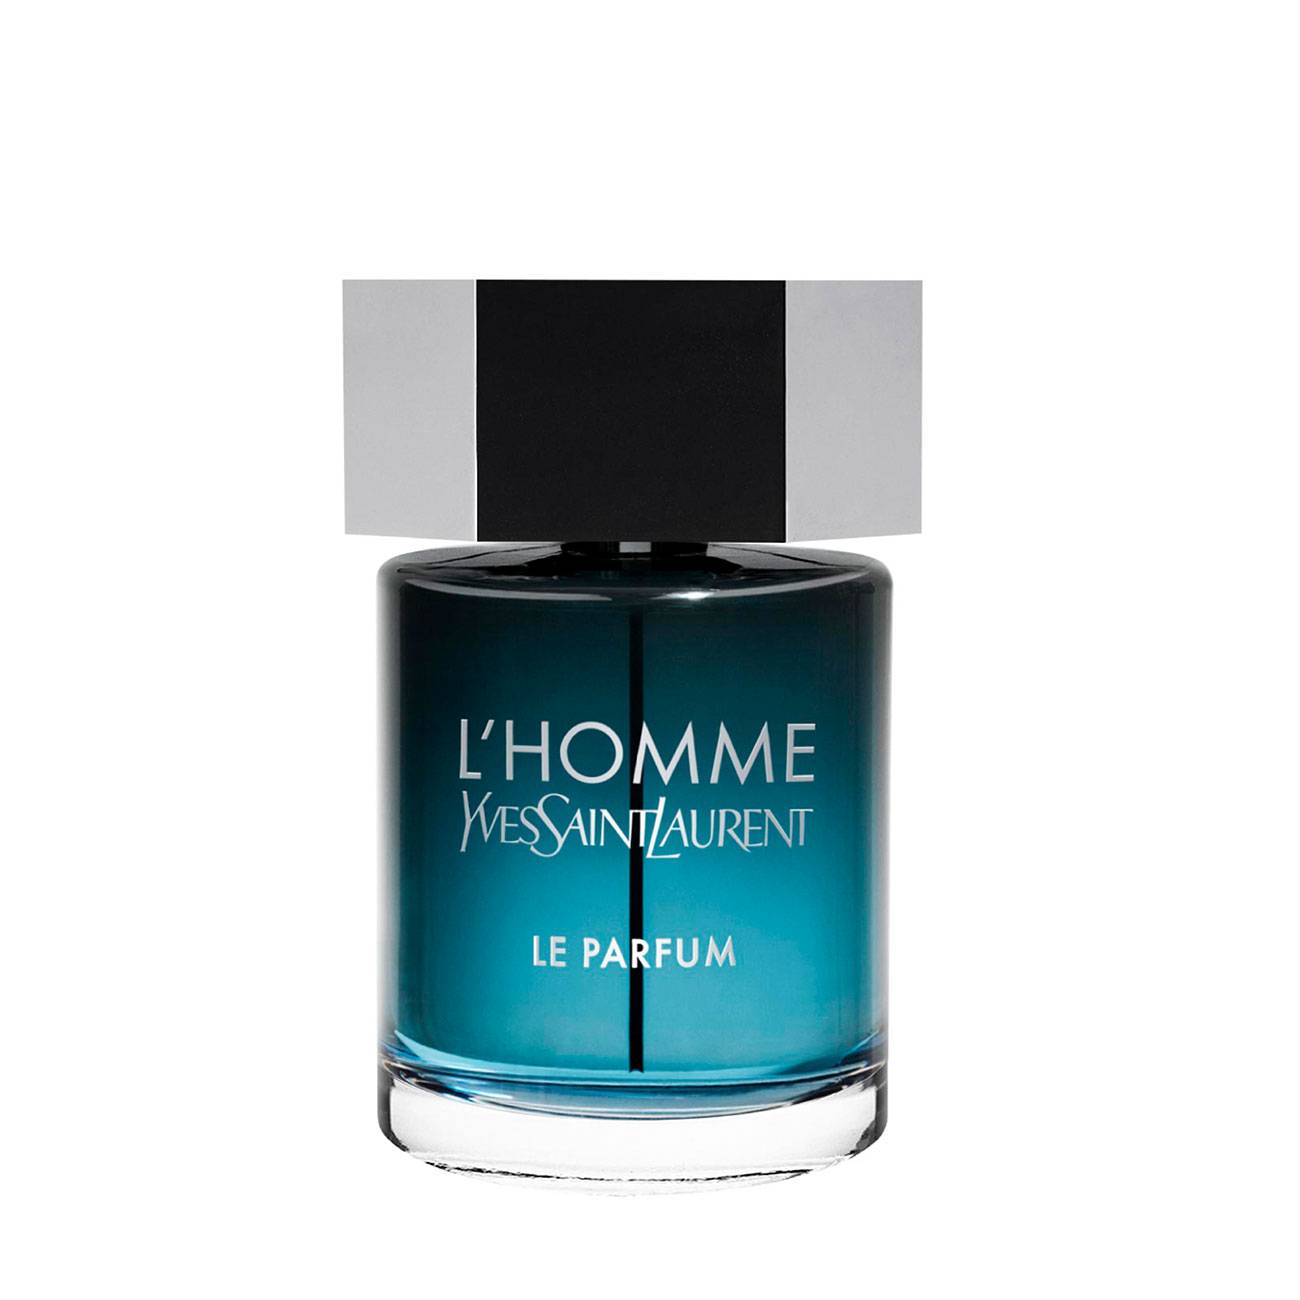 Apa de Parfum Yves Saint Laurent L’HOMME LE PARFUM 60ml cu comanda online